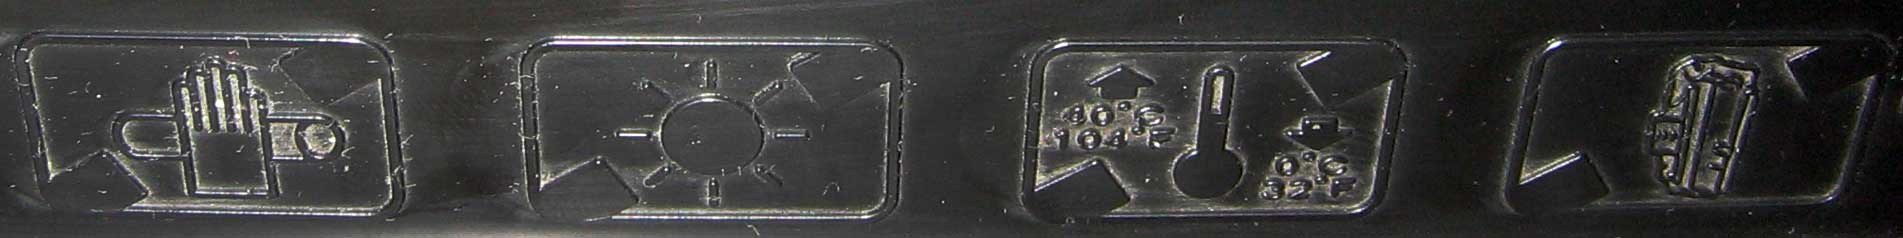 что означают значки на лазерном картирдже Samsung ML-1210D1